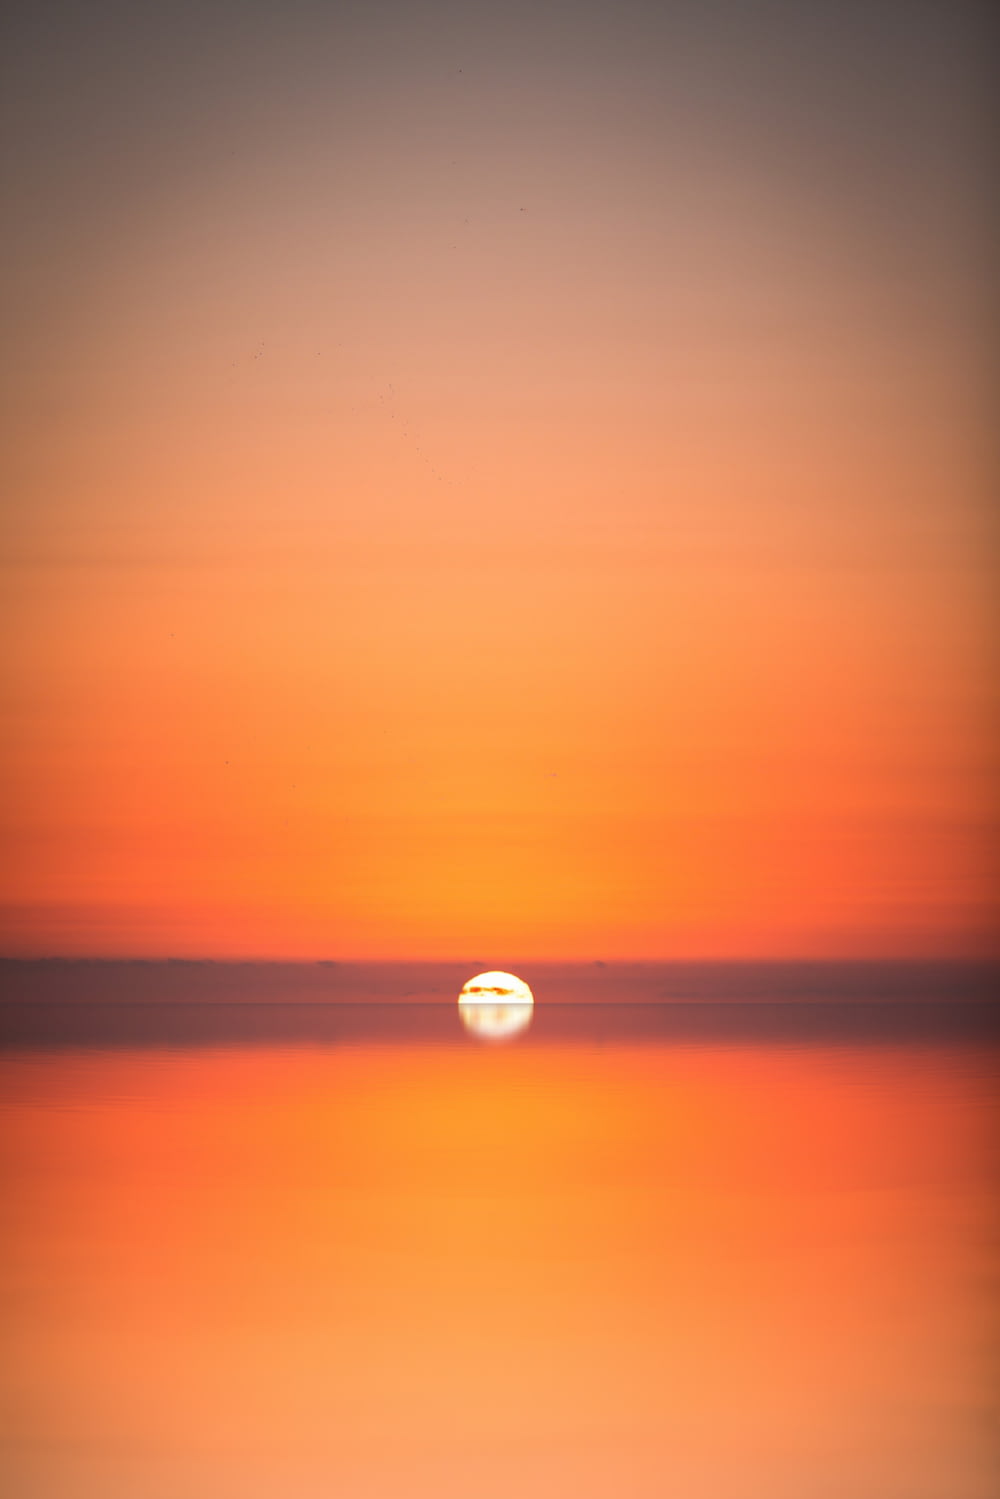 sunset on ocean